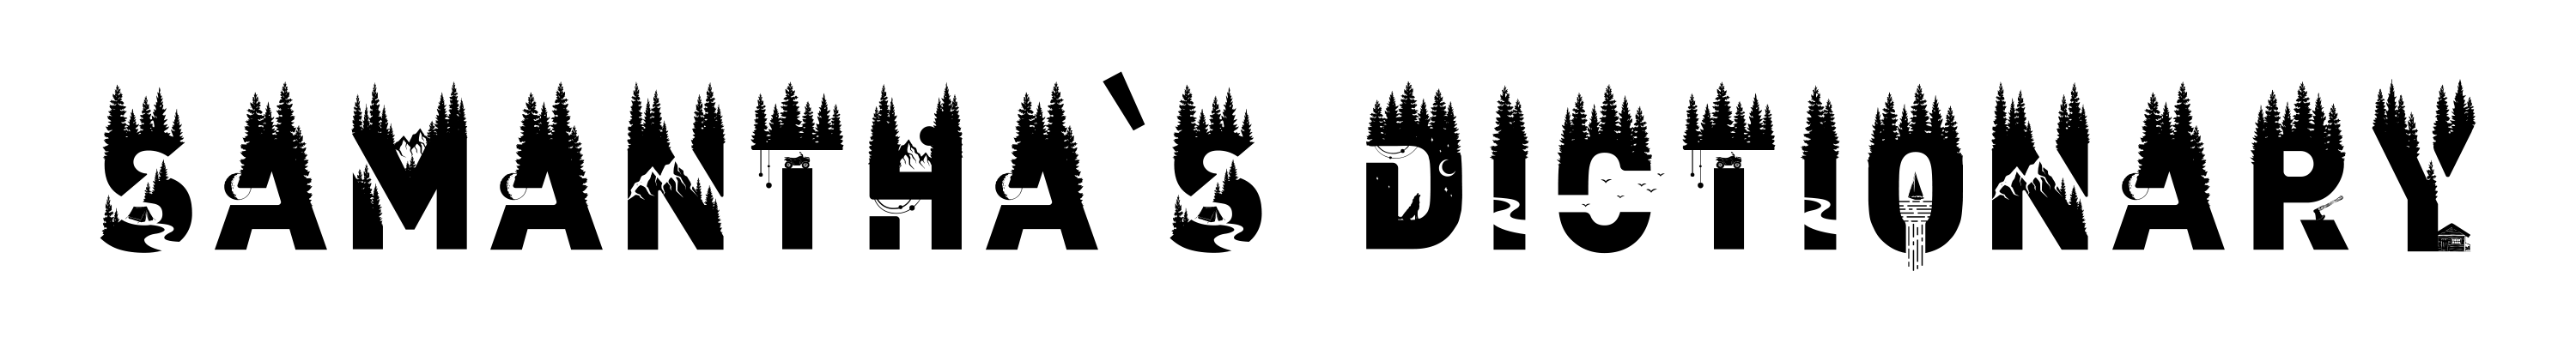 samantha logo